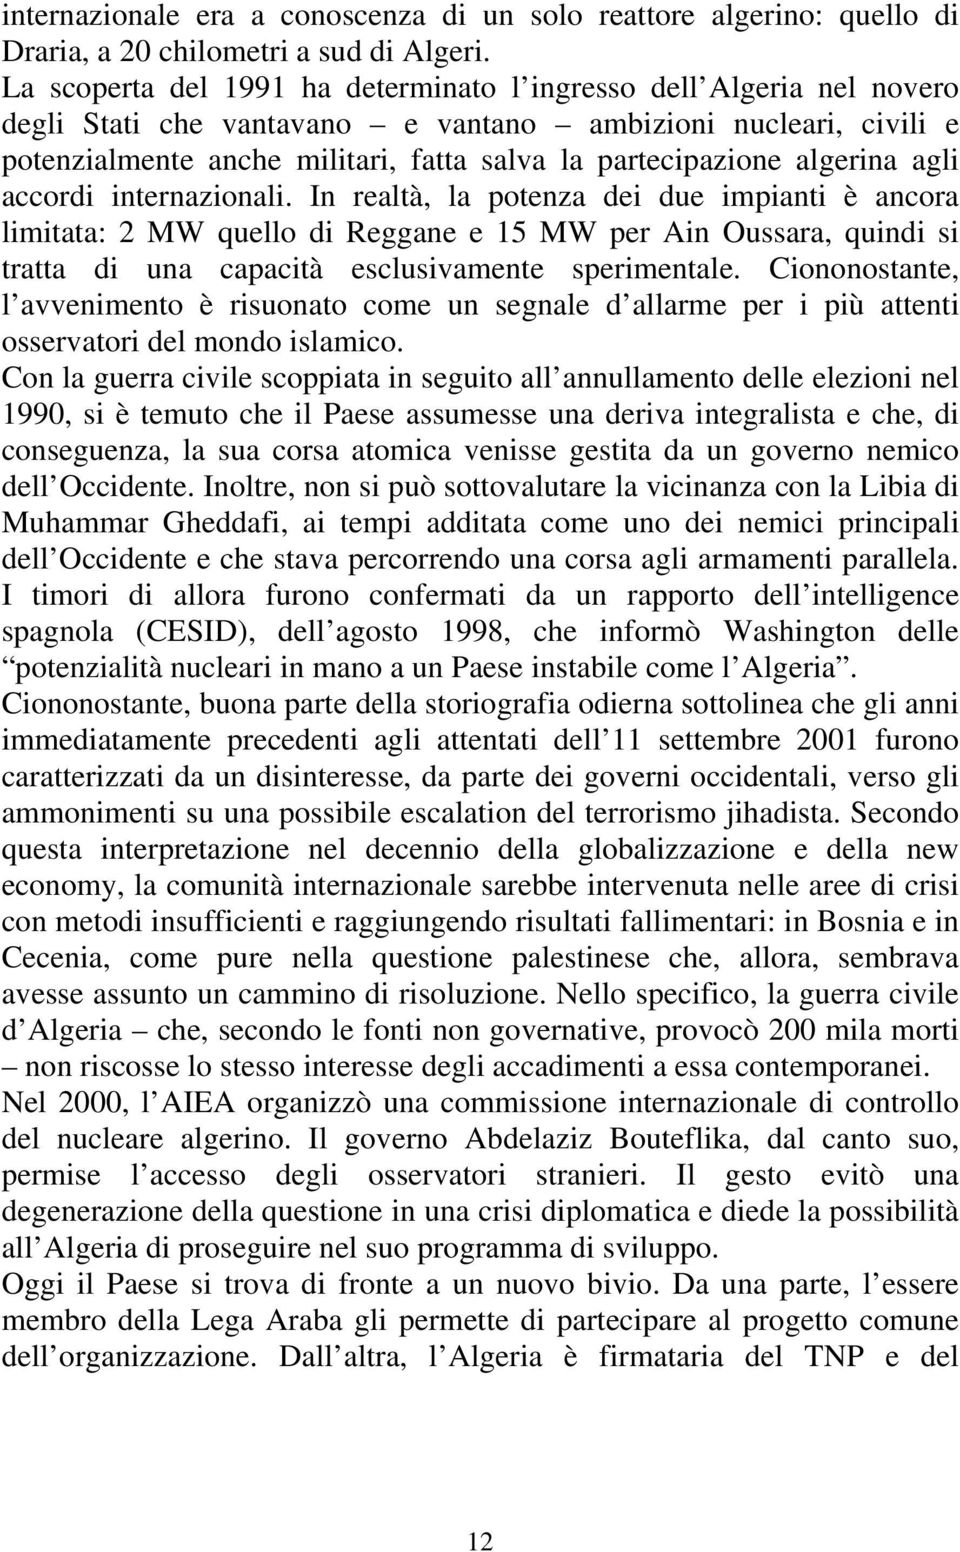 algerina agli accordi internazionali.